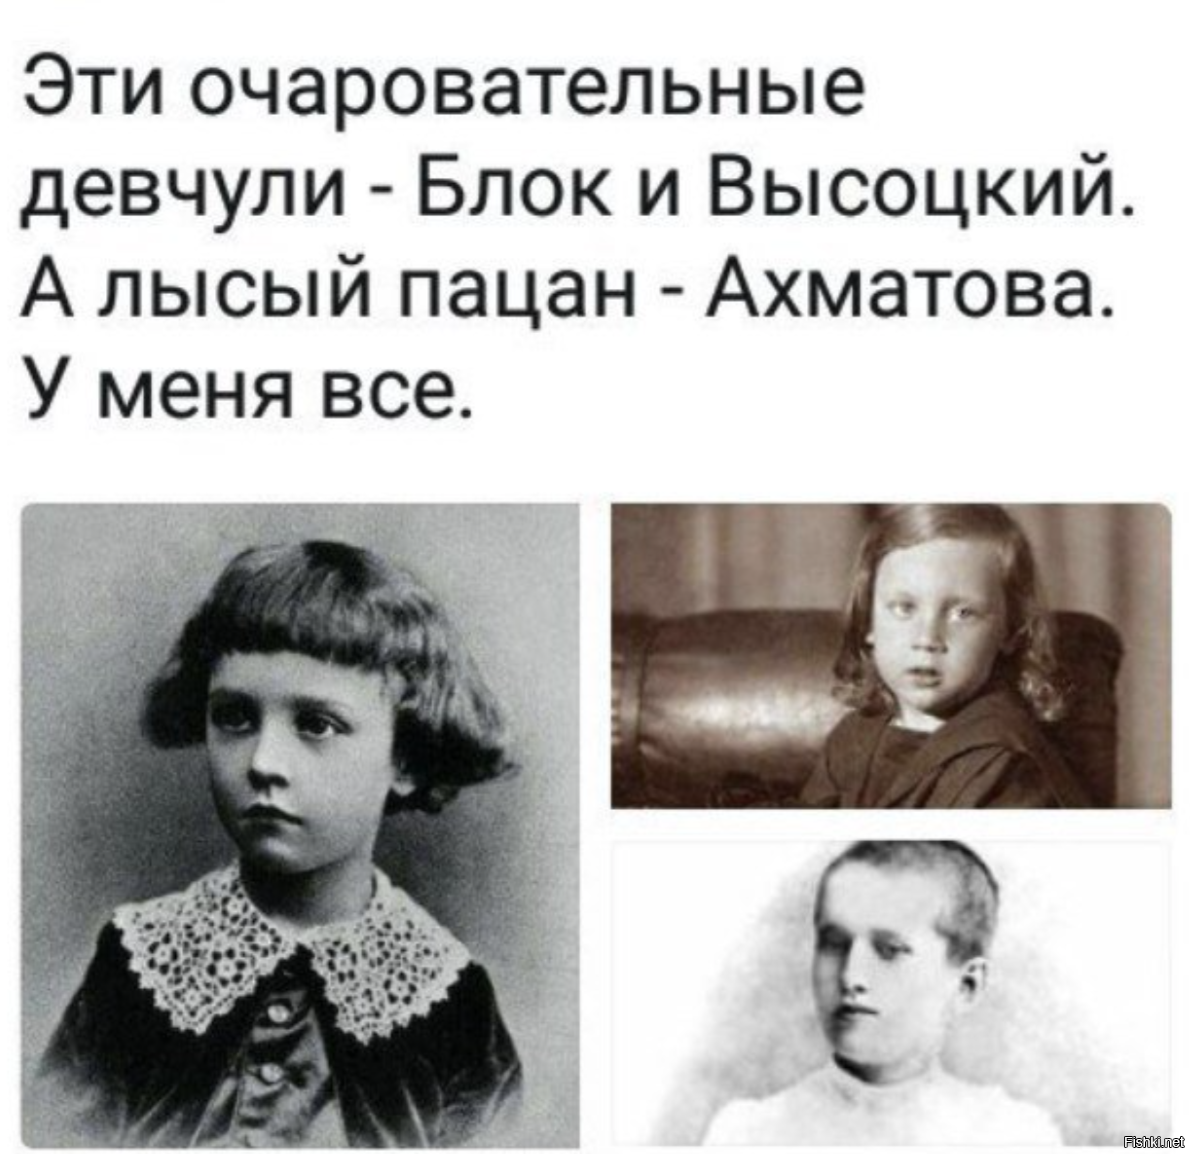 Ахматова мальчик. Детские фотографии Анны Ахматовой.